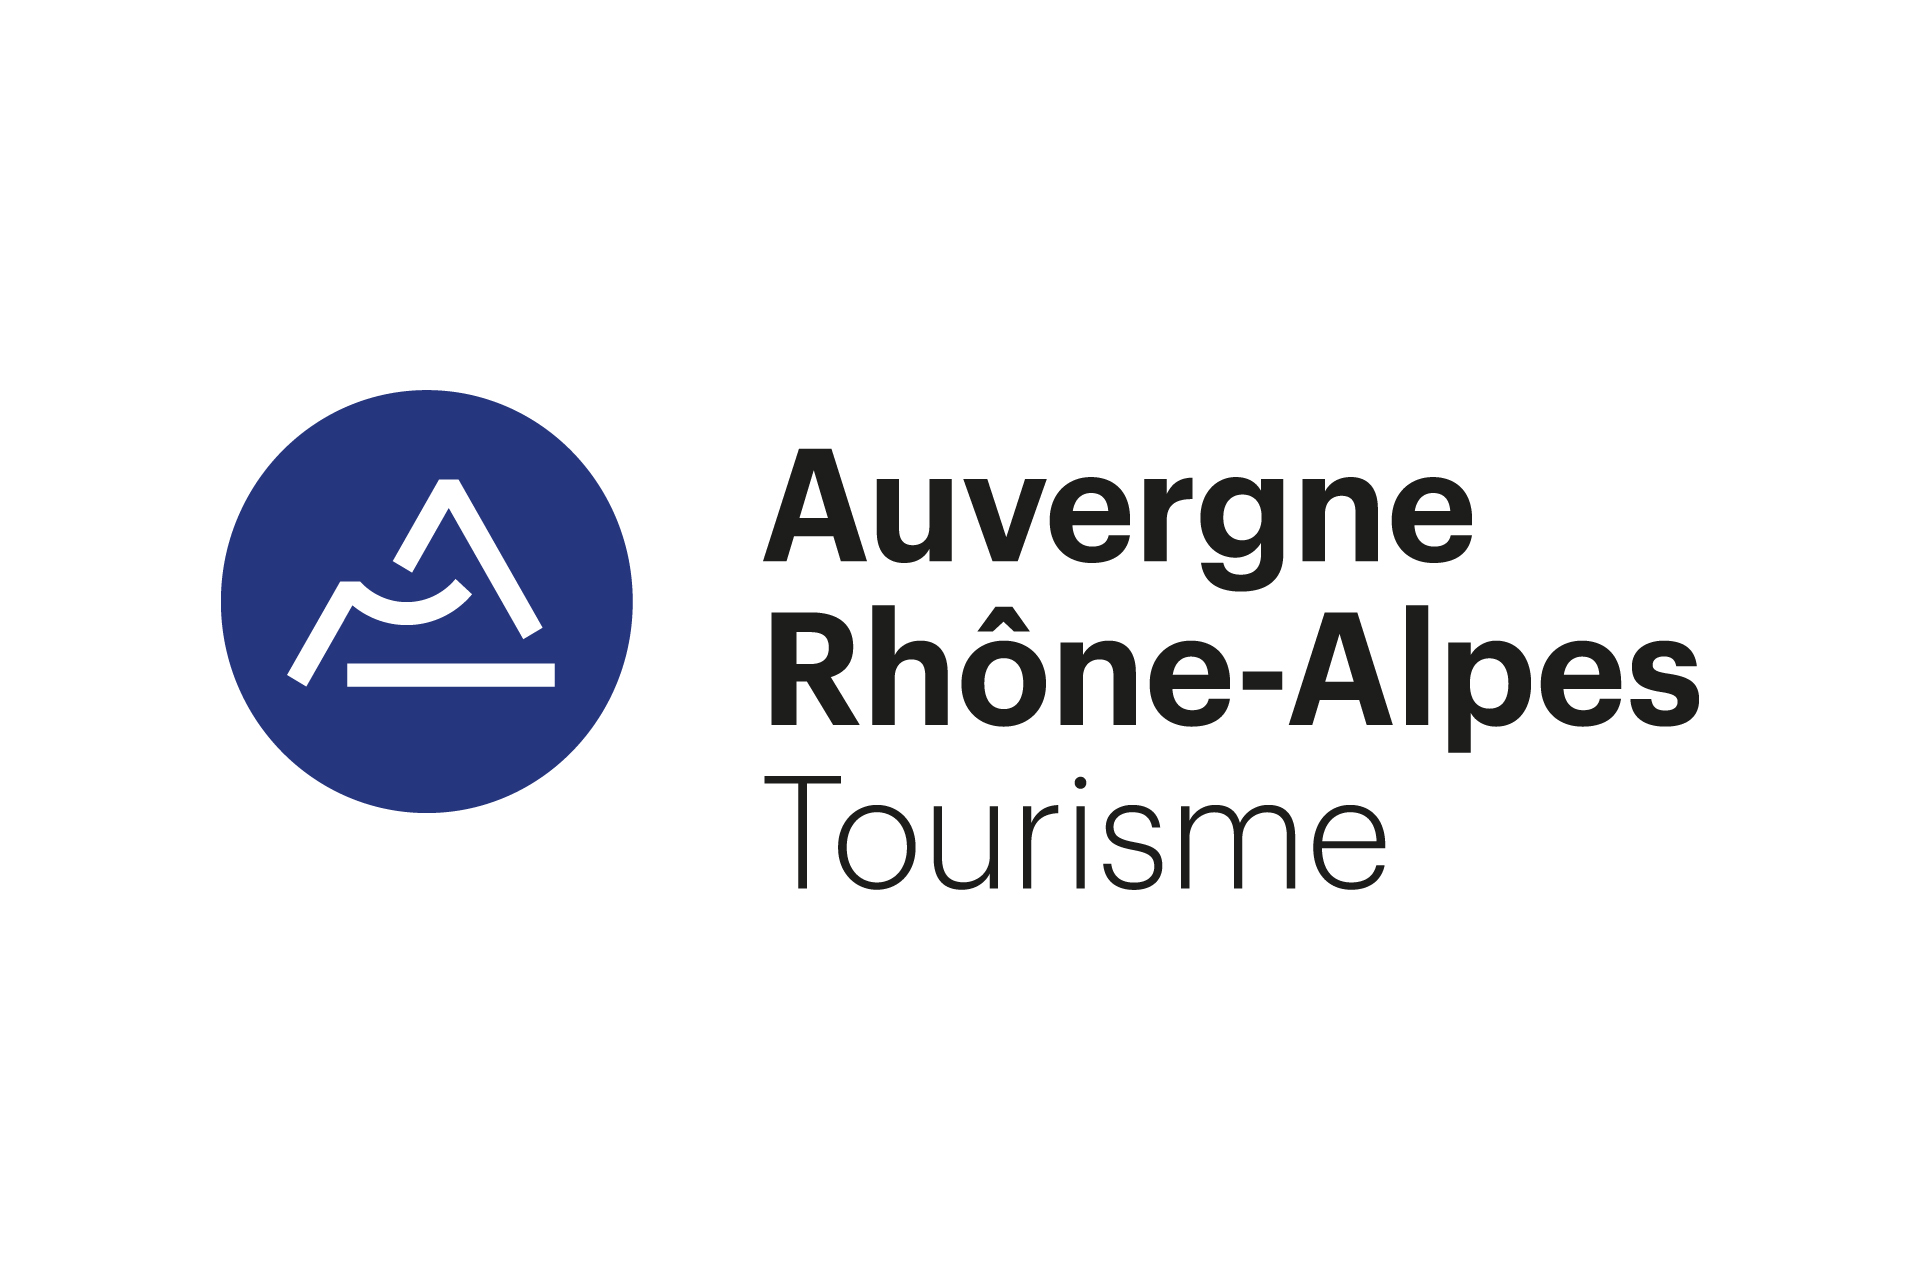 Chamrousse logo partenaire institution région auvergne-rhone-alpes tourisme station ski montagne grenoble isère alpes france - © Auvergne-Rhône-Alpes Tourisme